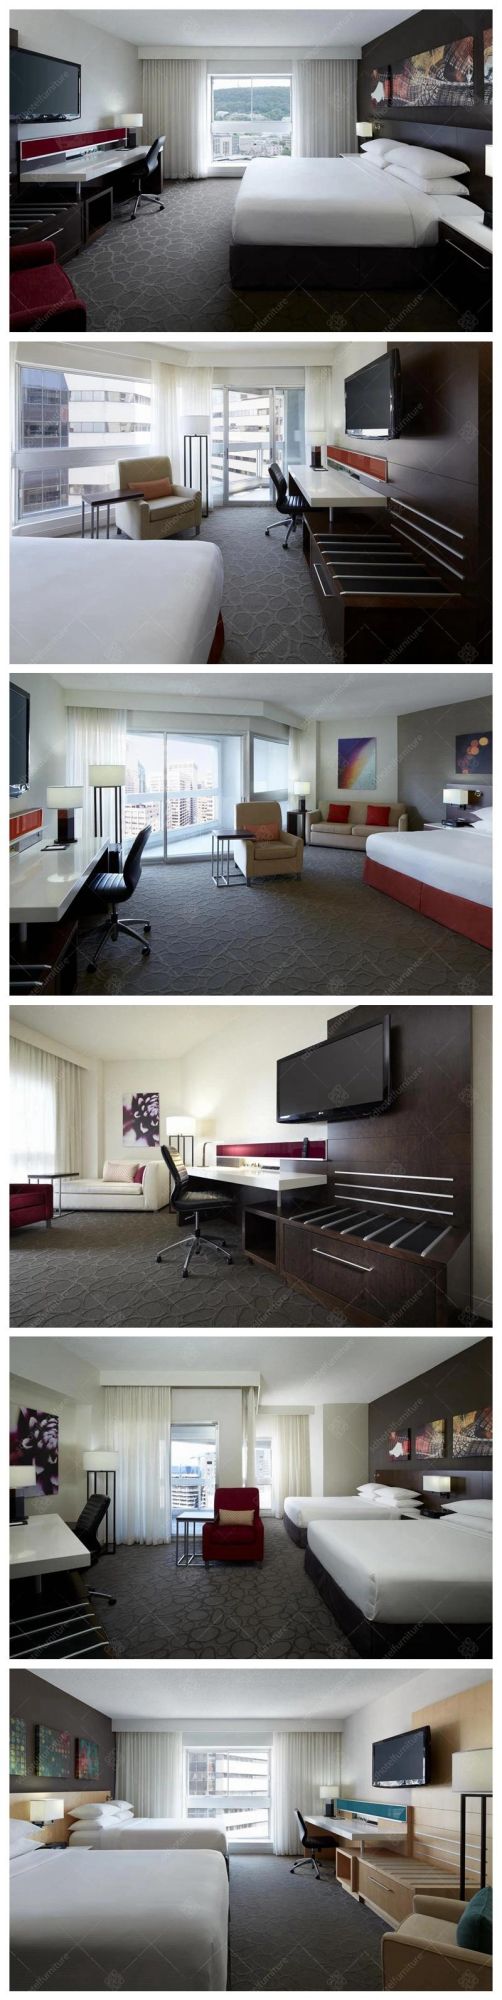 Modern Design 5 Stars Wooden Hotel Bedroom Furniture Sets